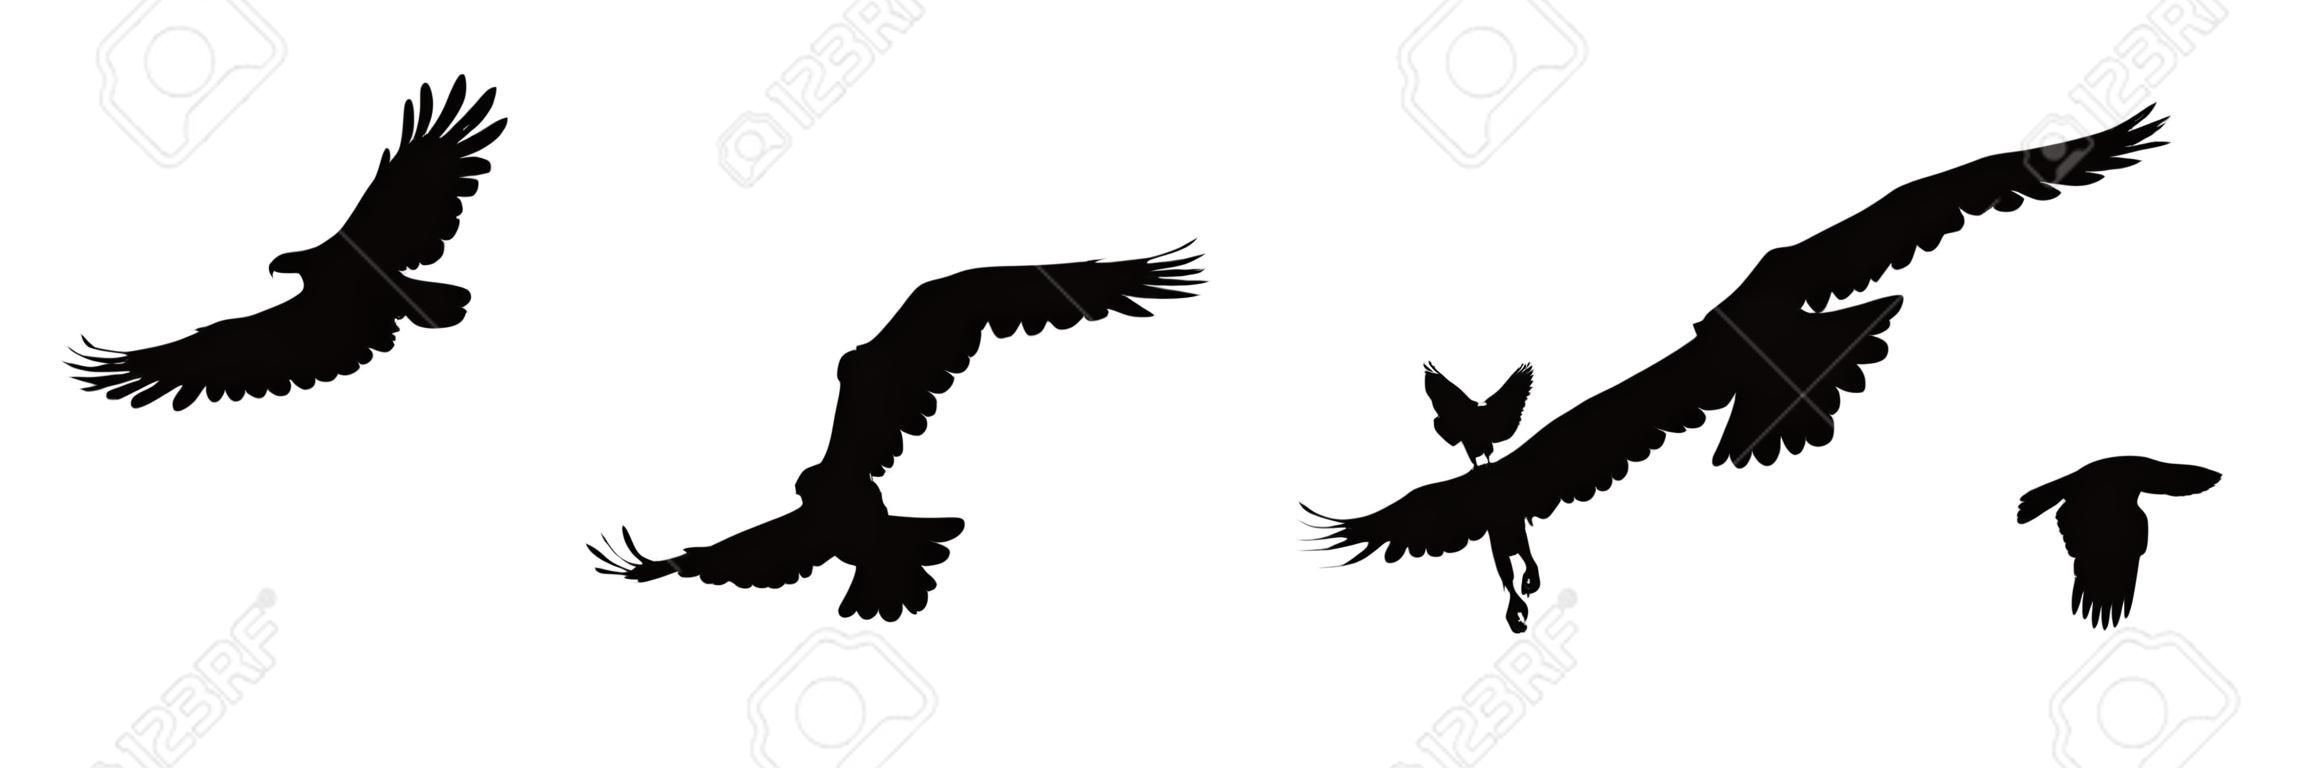 Uccelli neri della siluetta isolati su priorità bassa bianca. Falco, falco, aquila o orel. Un grande predatore si libra nell'aria. Icona clipart, elemento grafico semplice per il design. Illustrazione vettoriale Eps 10.